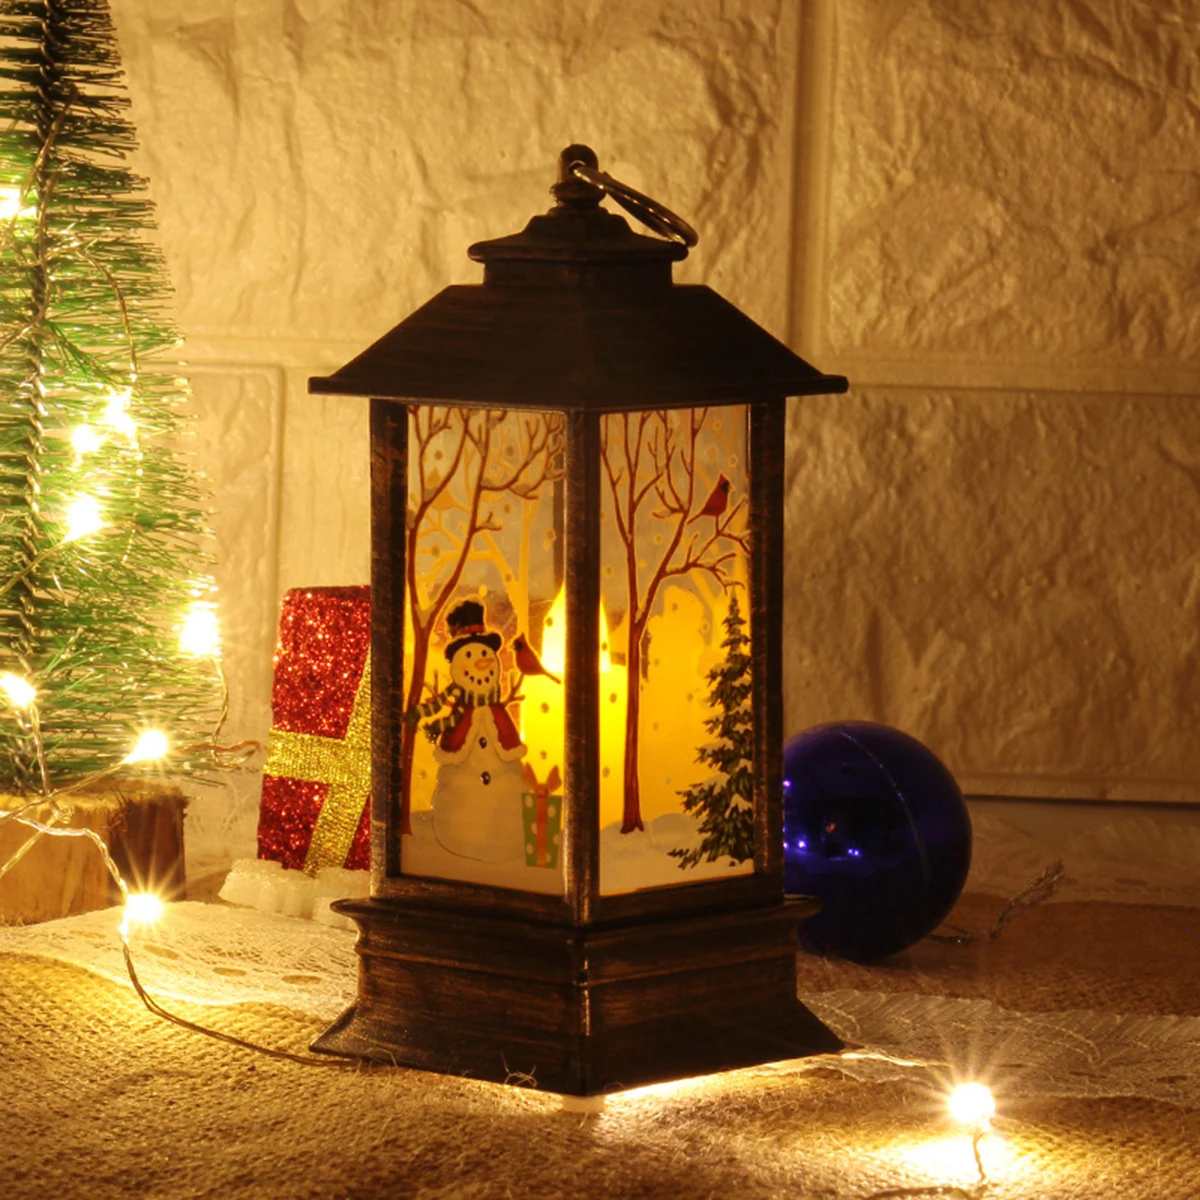 

Рождественский фонарь, украшение в виде Санта-Клауса, снеговика, лося, подсвечник, рождественские украшения, новогодний подарок, фотография, свеча